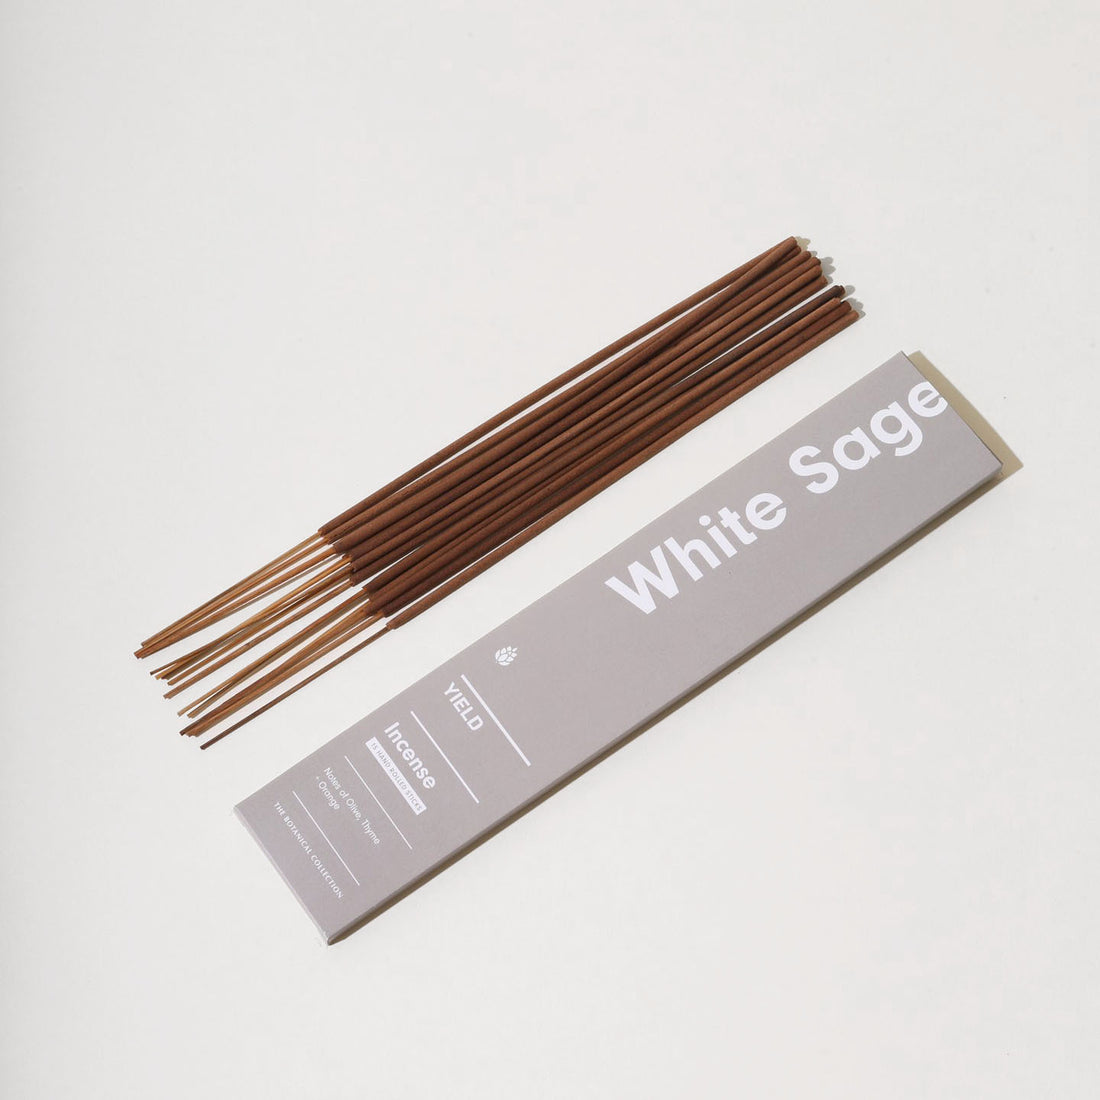 white sage incense